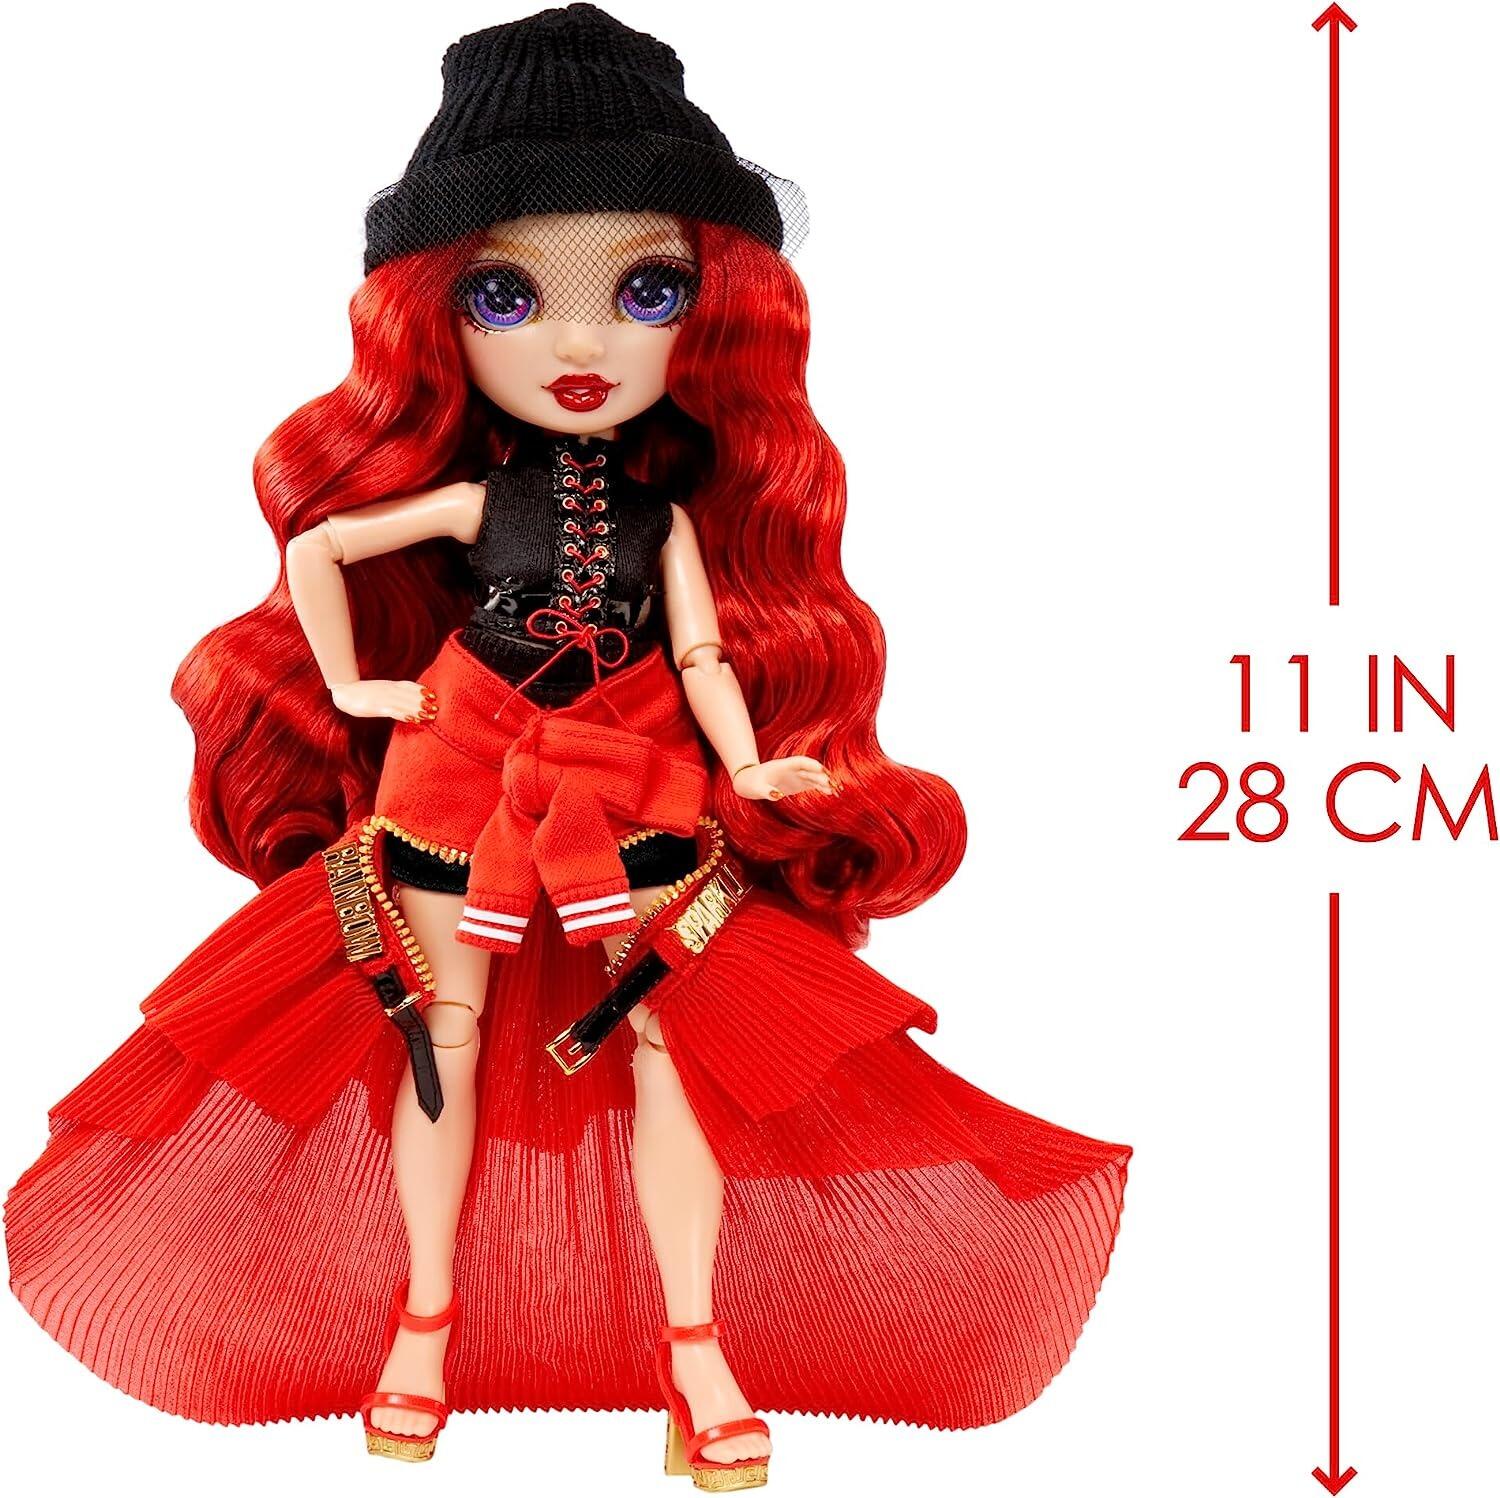 Rainbow High Fantastic Fashion Poppy Rowan - Orange 11” Fashion Doll